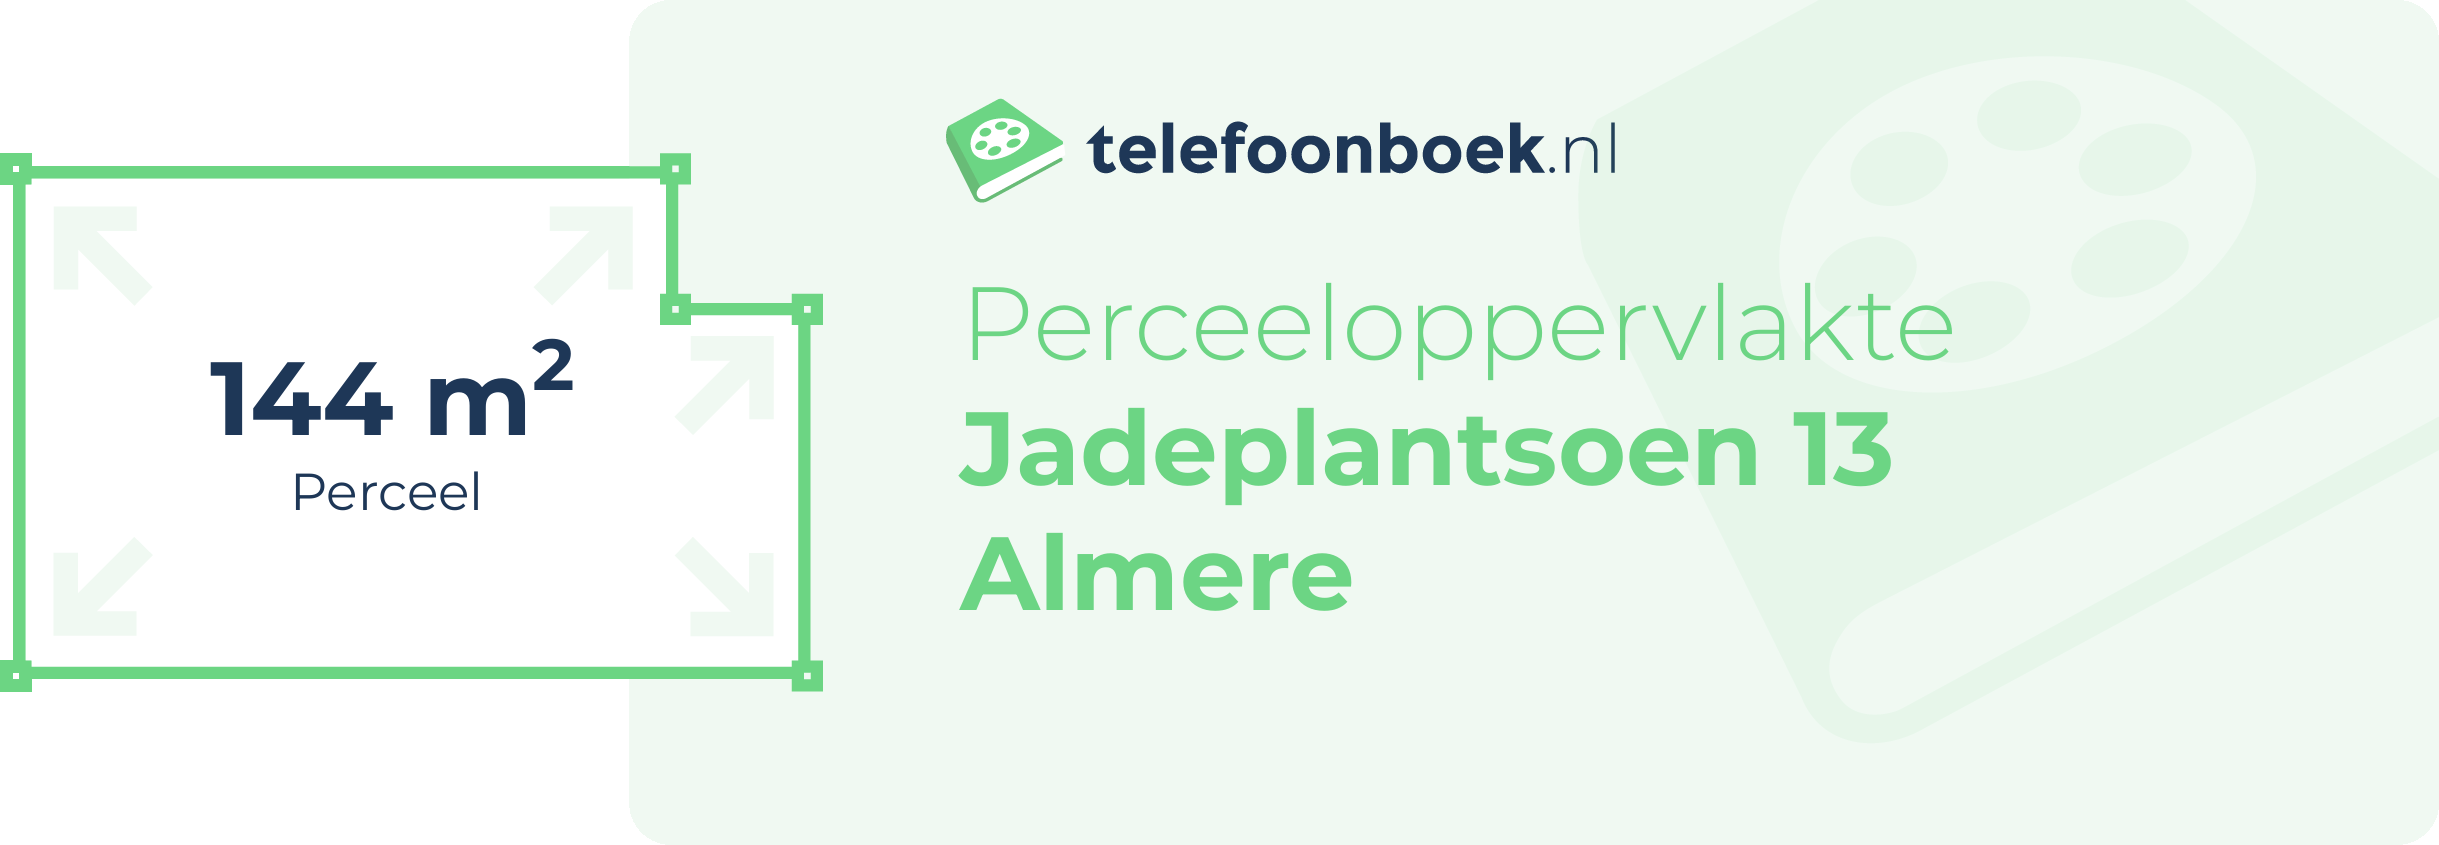 Perceeloppervlakte Jadeplantsoen 13 Almere